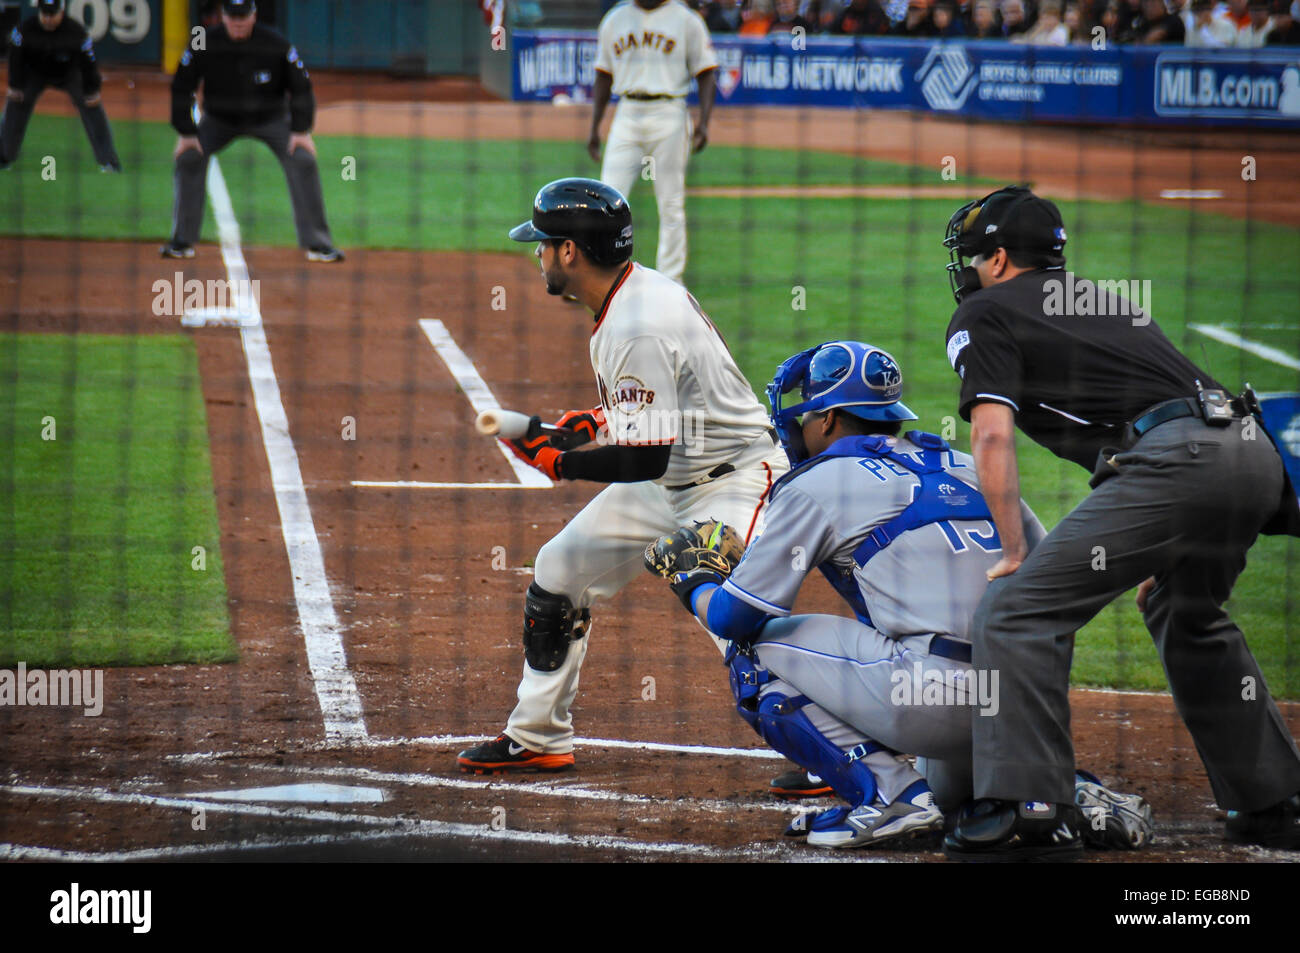 2014 World Series Spiel zwischen den San Francisco Giants und die Kansas City Royals im AT&T Park. Gregor Blanco an bat. Stockfoto